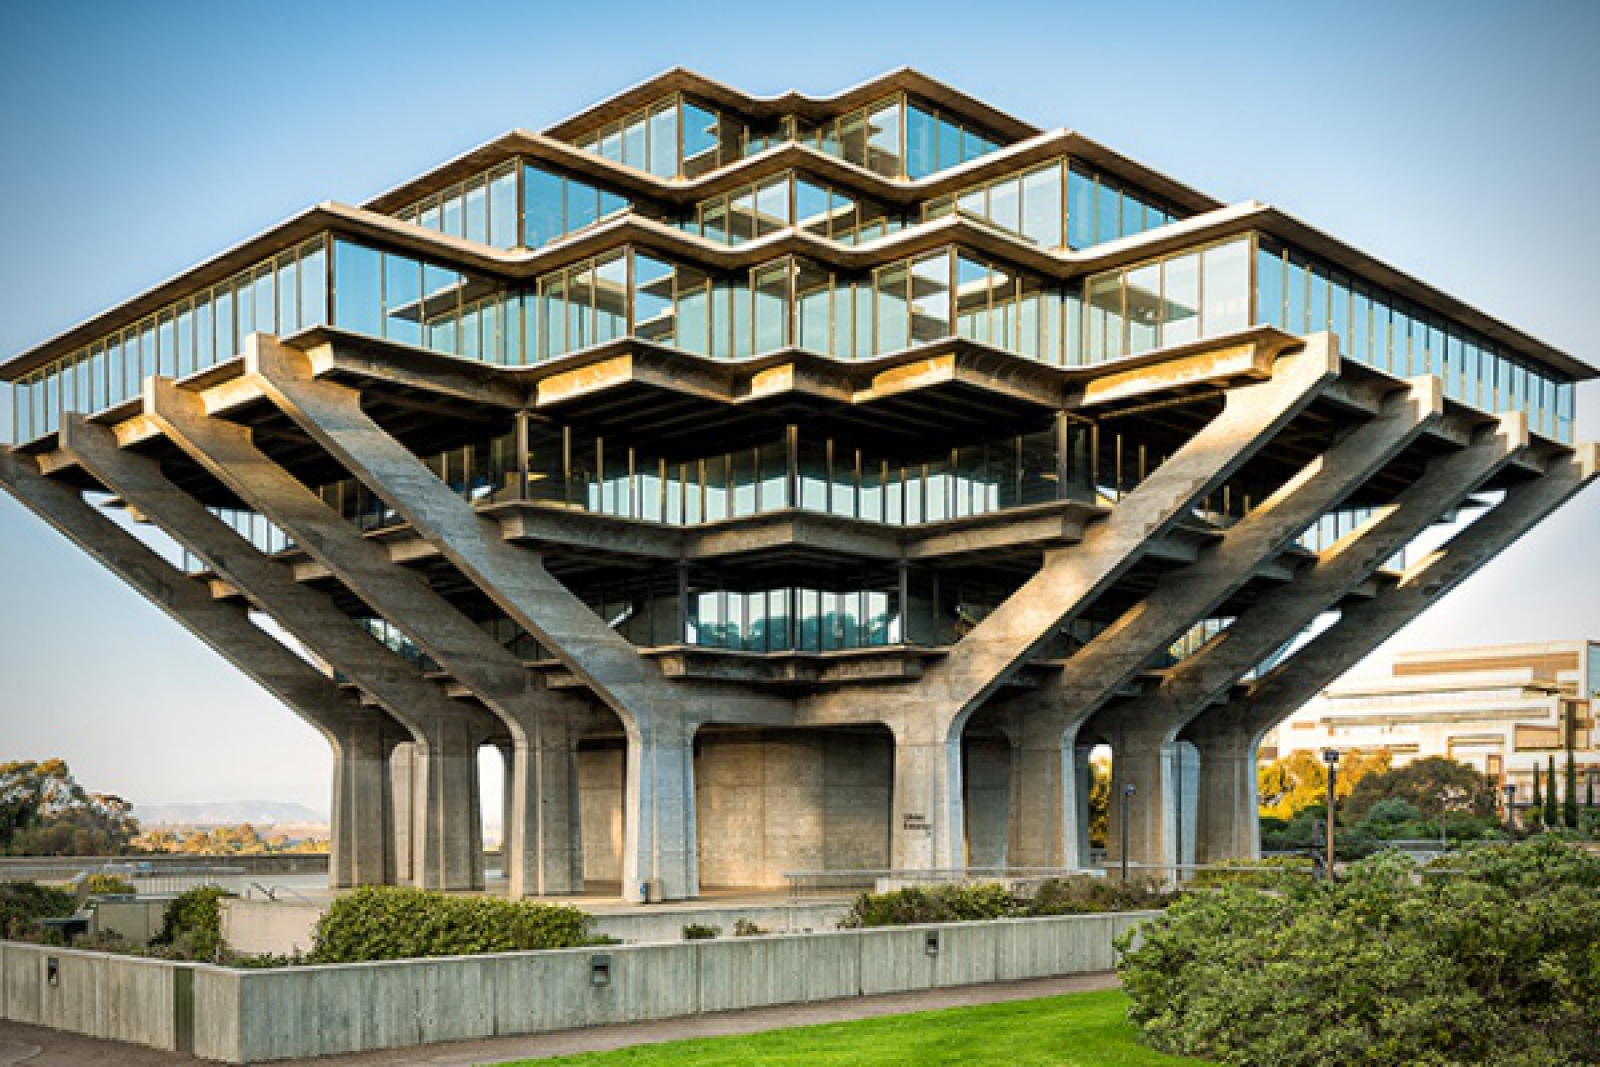 Архитектура architecture. Библиотека Гейзеля в Сан-Диего. Библиотека Гейзеля в Сан-Диего Архитектор. Библиотека Гейзеля в Сан-Диего (1970).. Библиотека Гейзеля в Сан-Диего план.